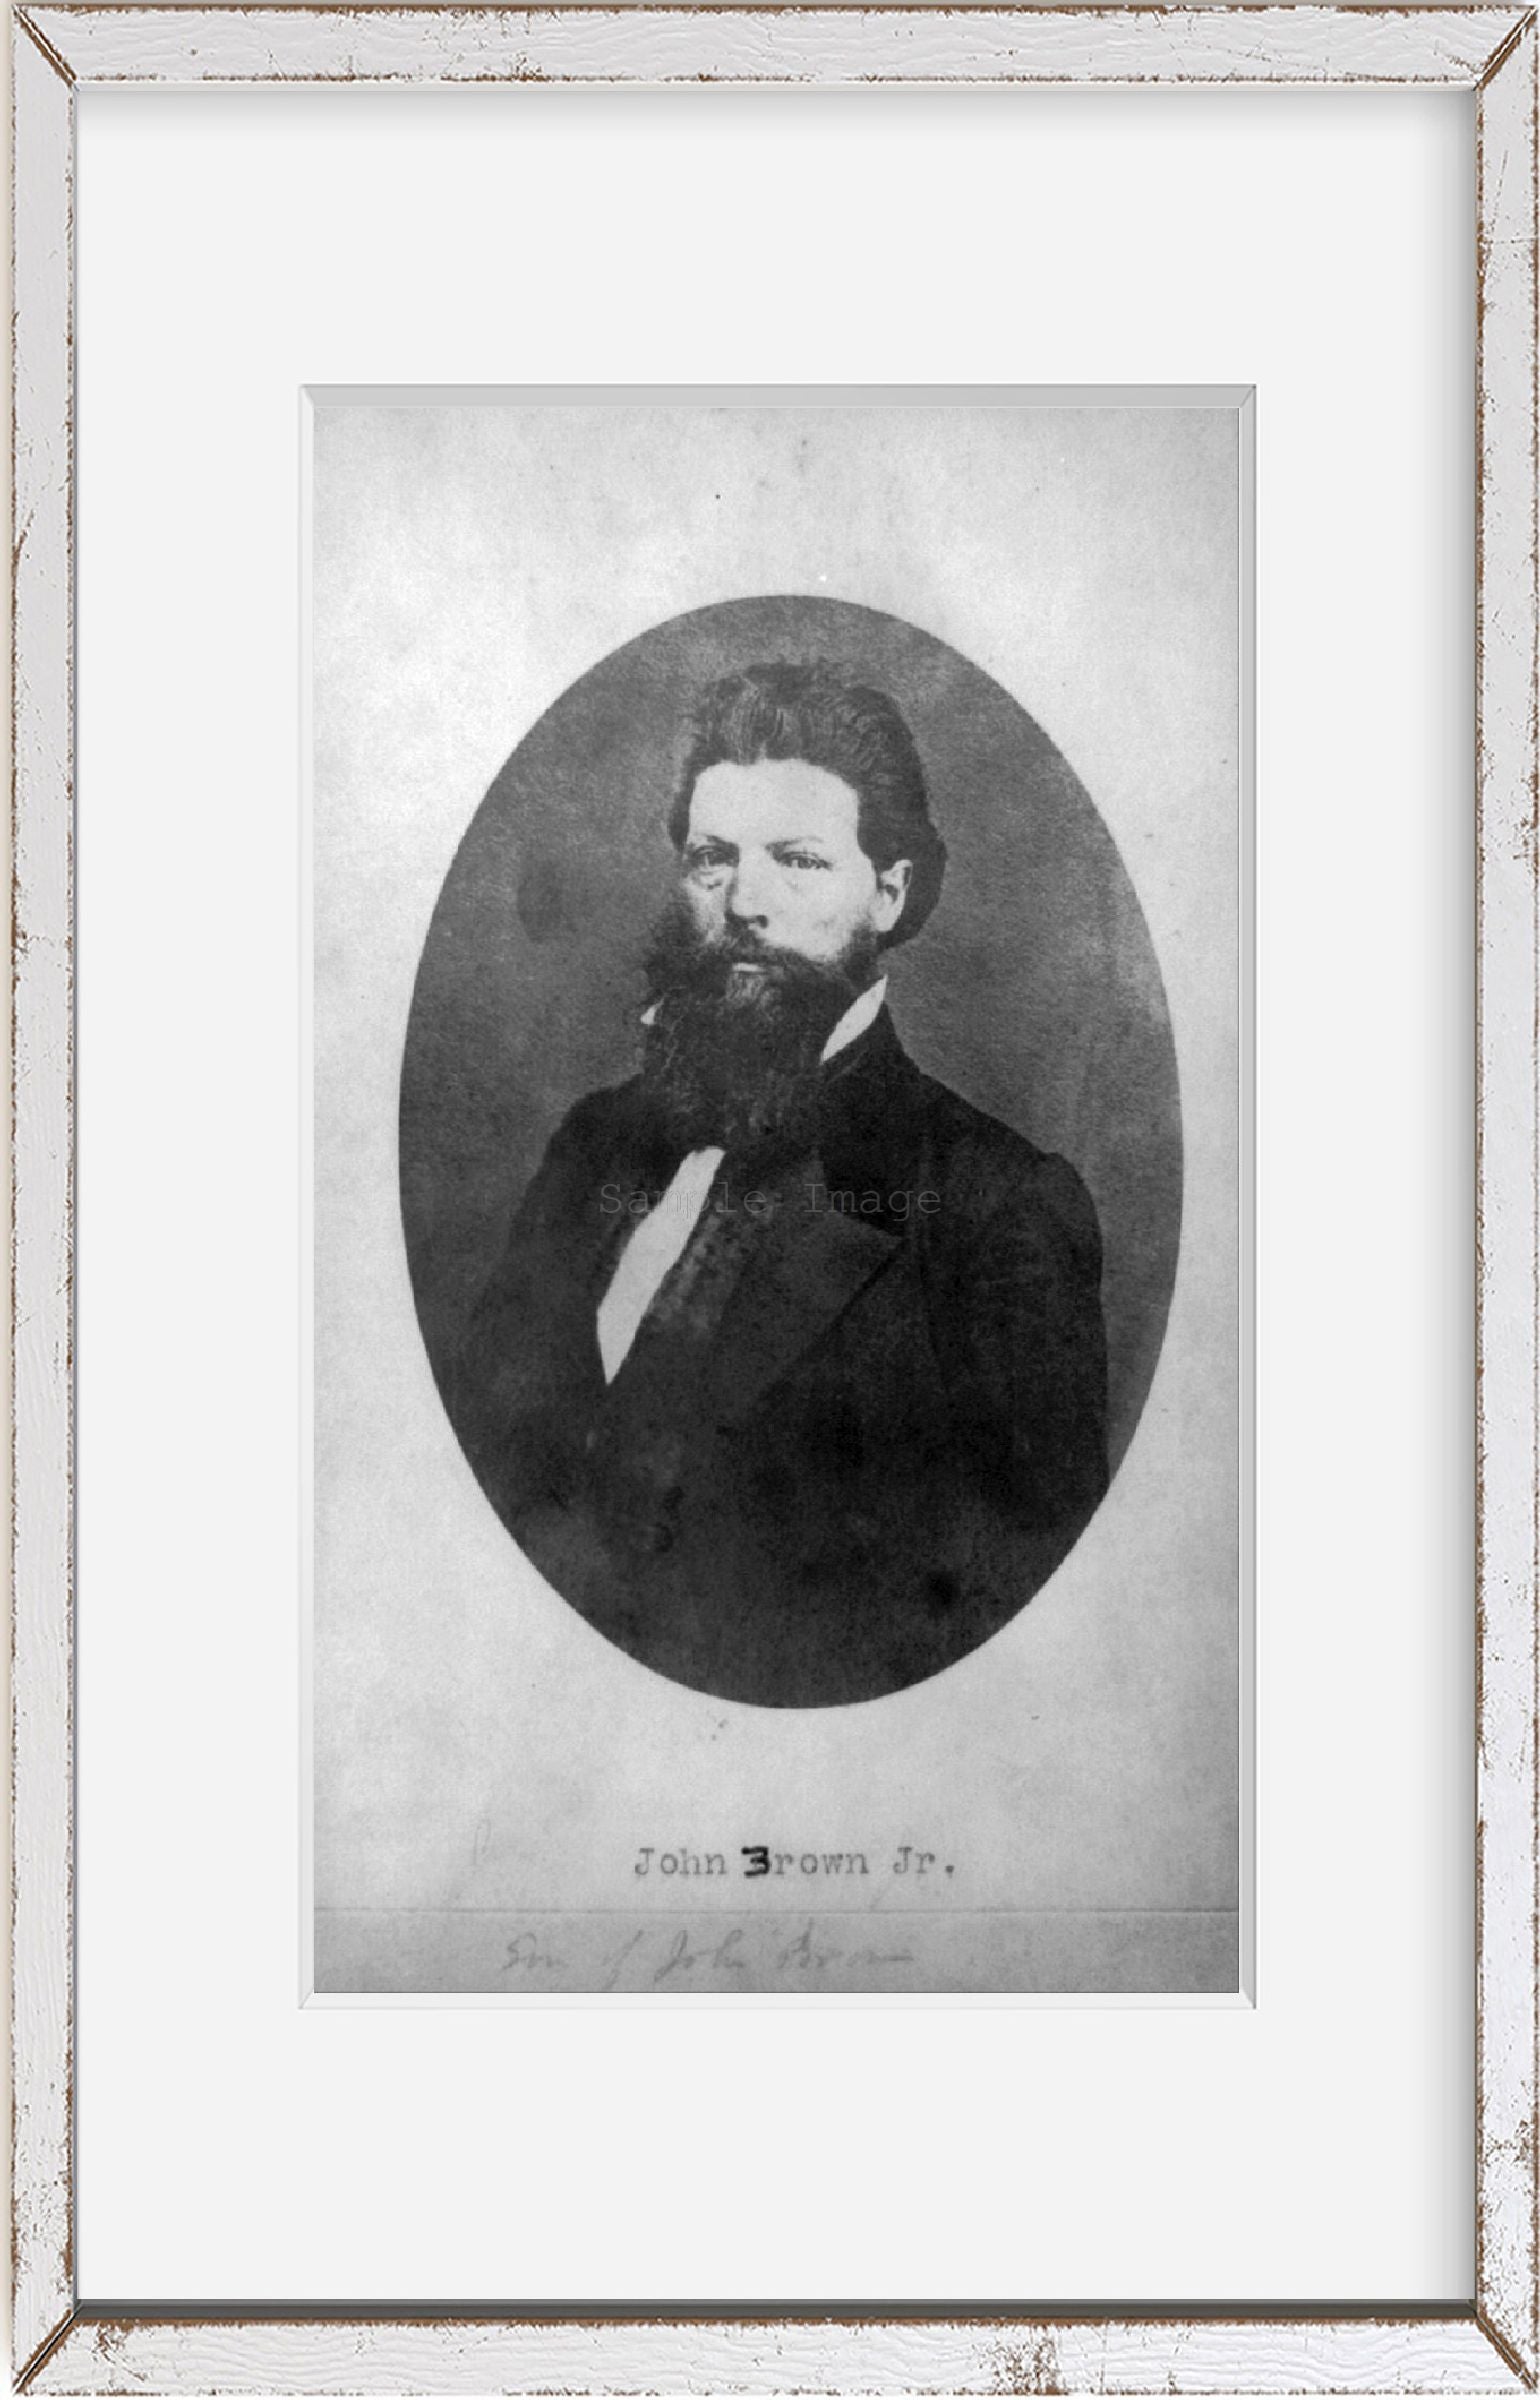 Photograph of Contemporaries of John Brown - John Brown, Jr.